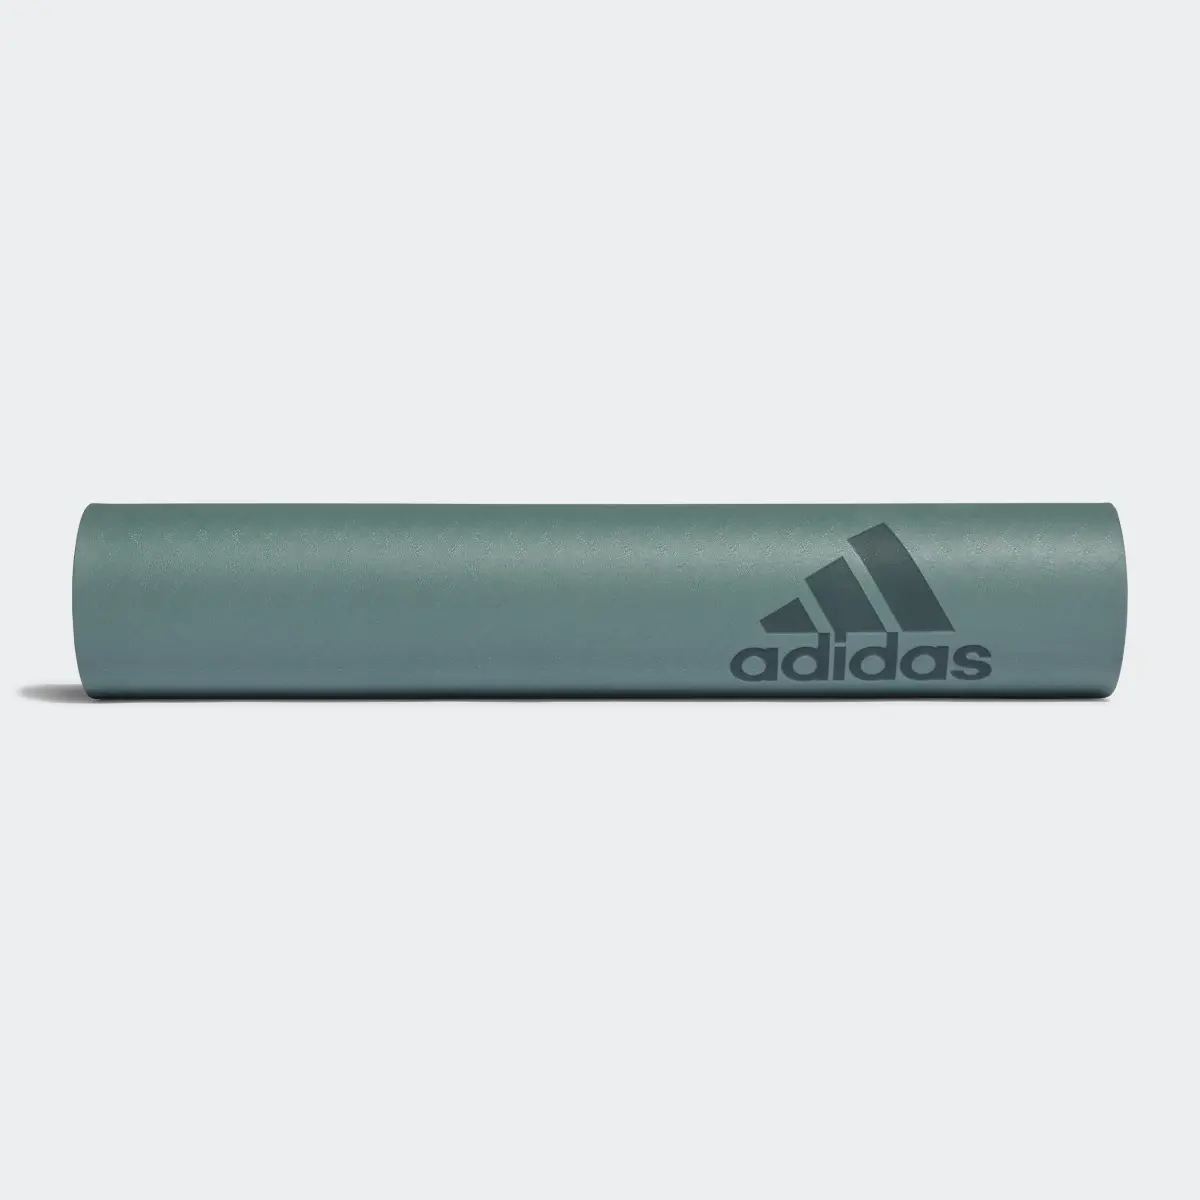 Adidas Premium Yoga Mat 5 mm. 2